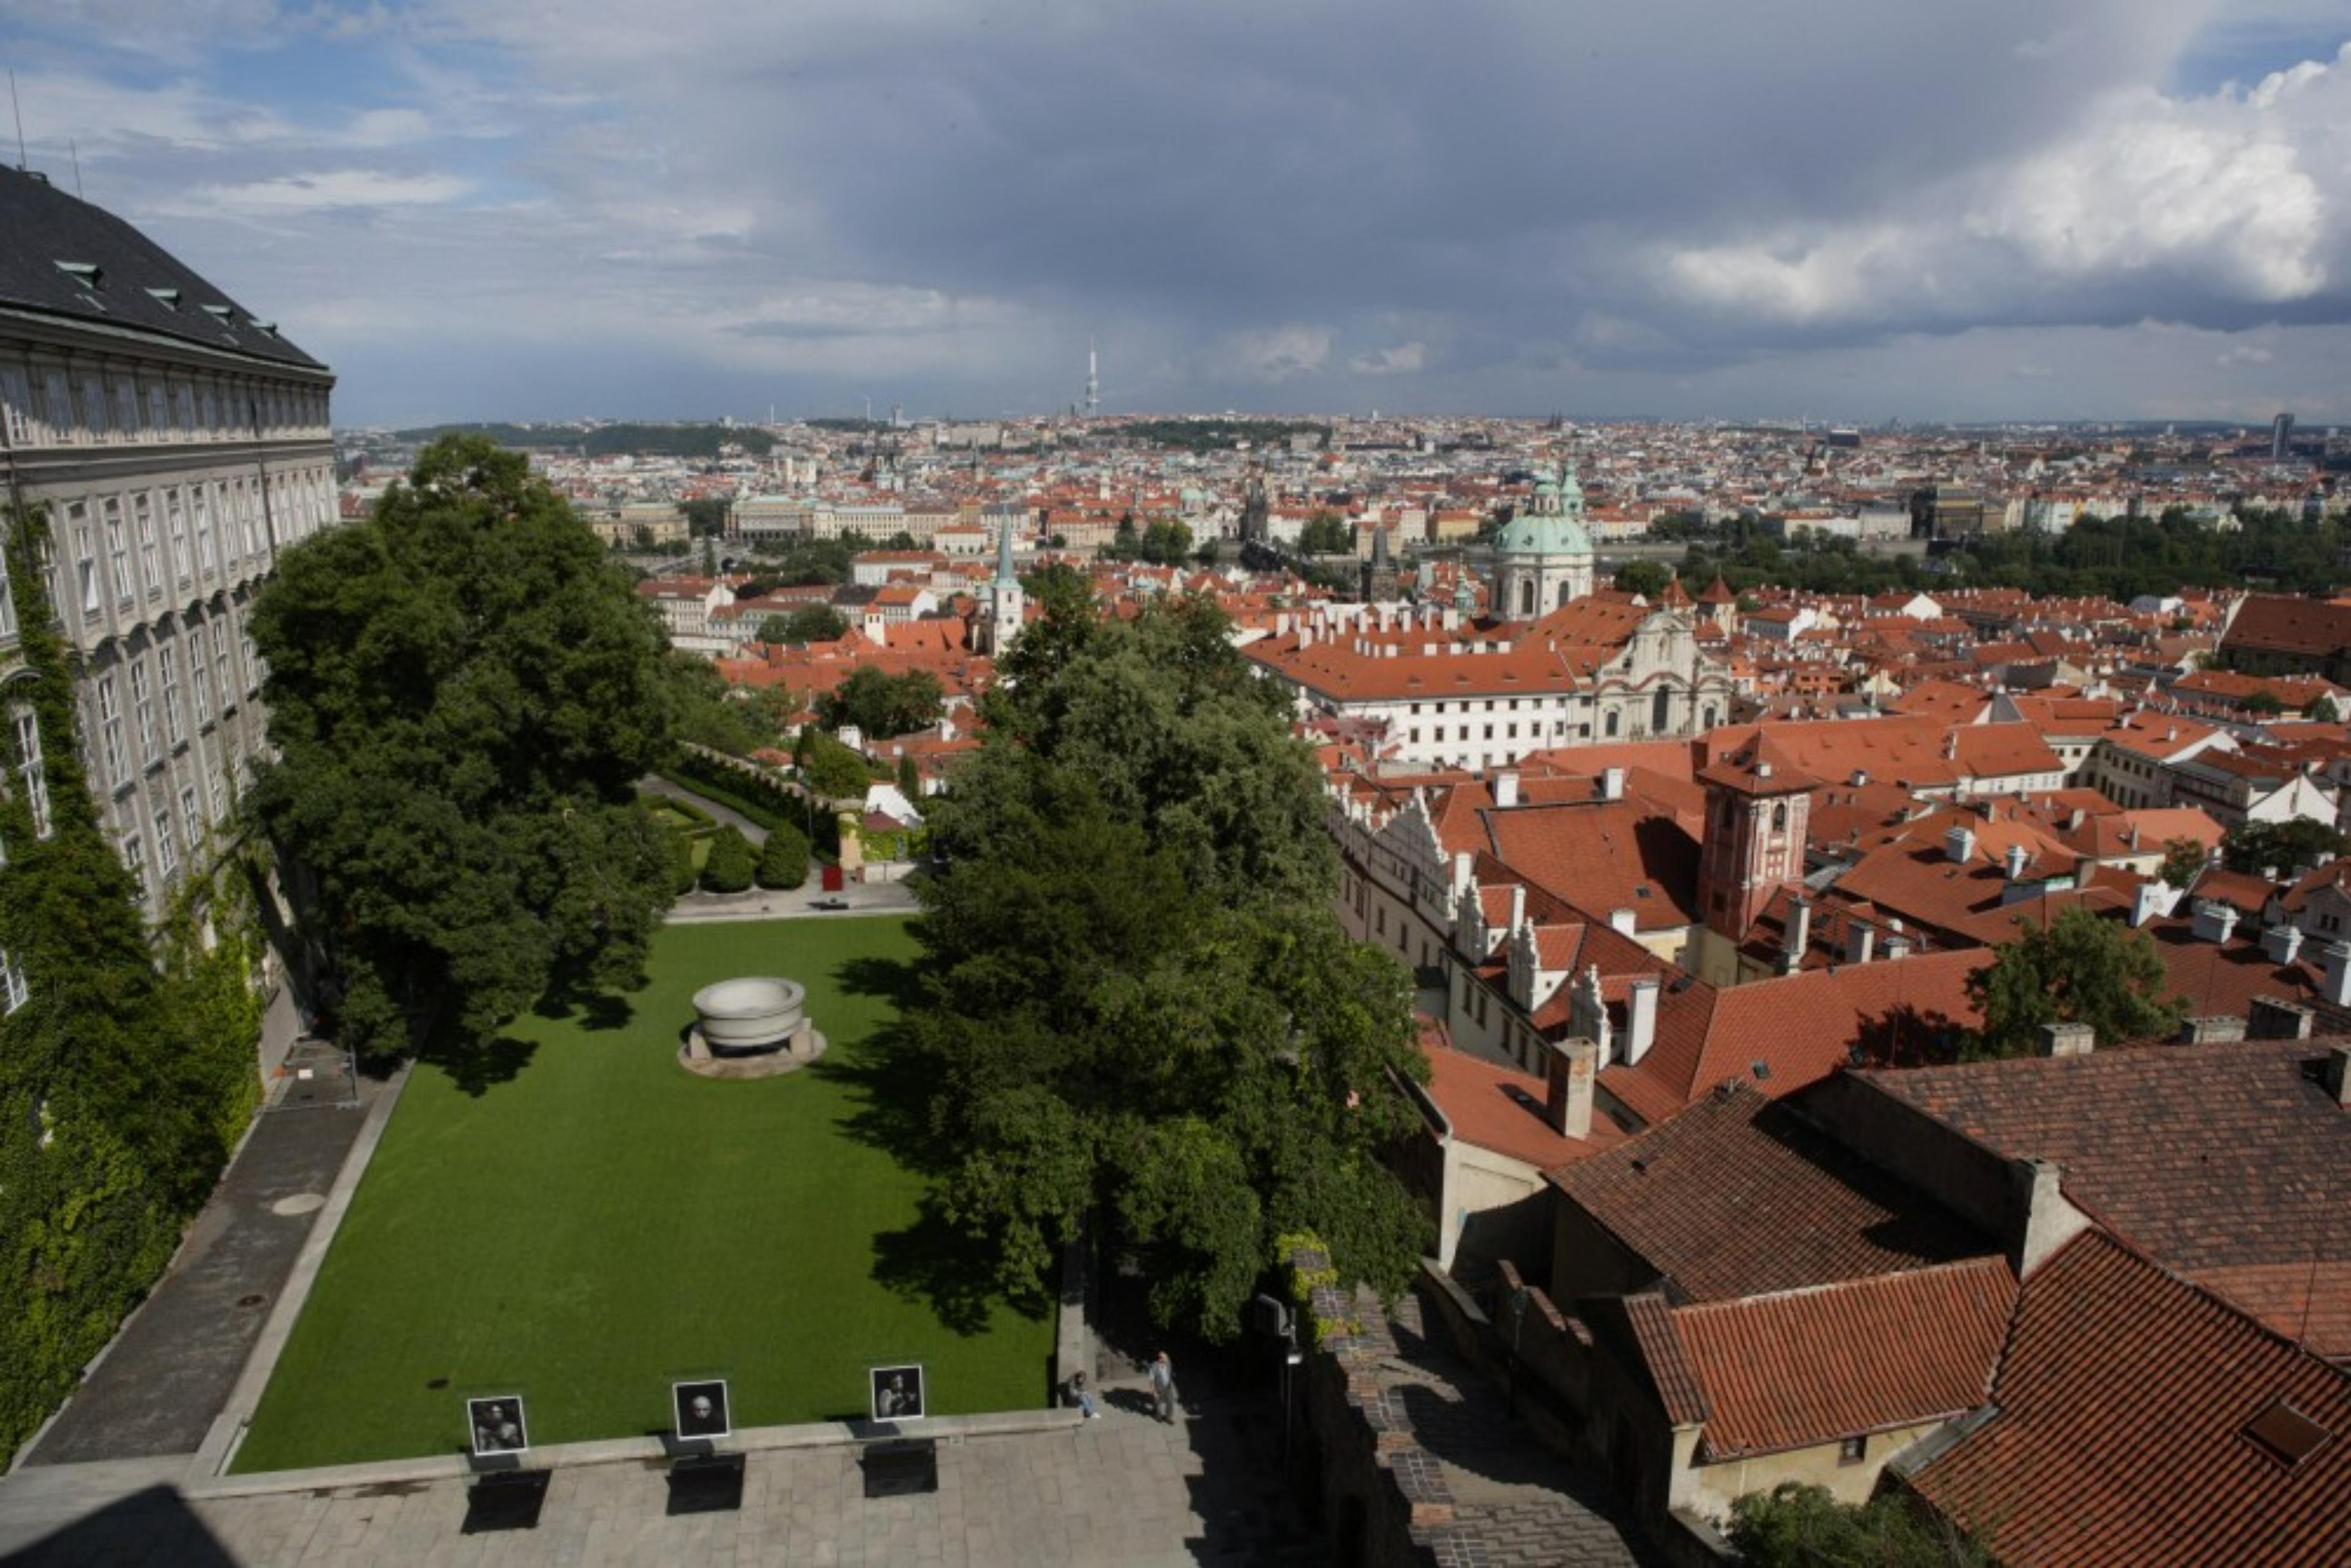 South Gardens of Prague Castle